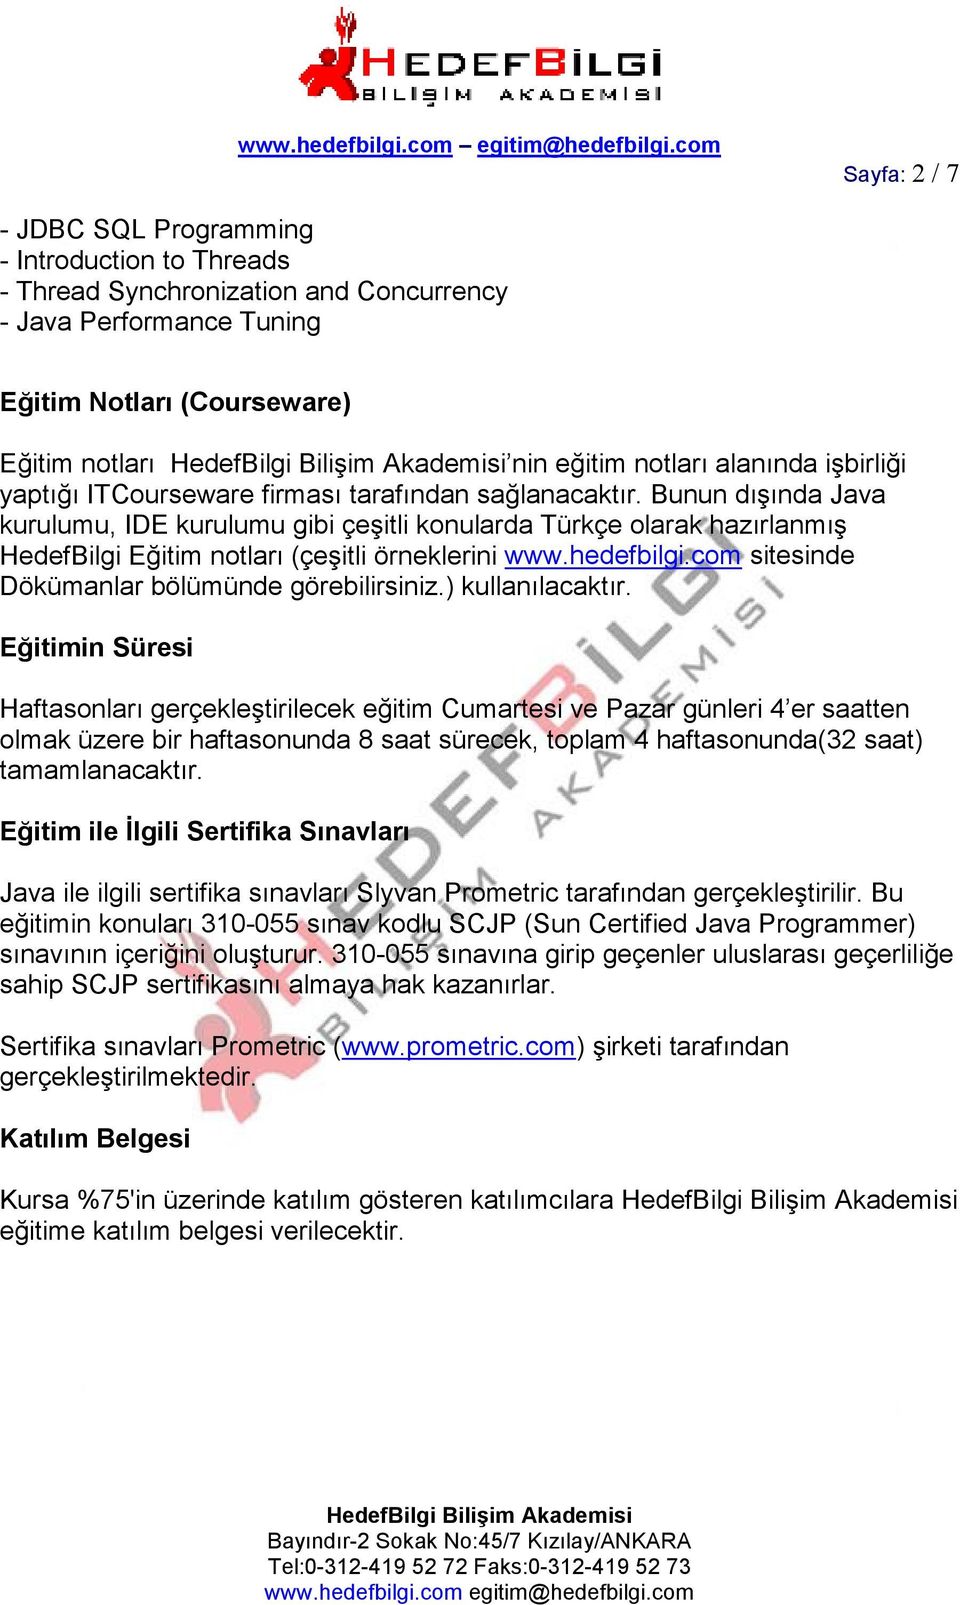 Bunun dışında Java kurulumu, IDE kurulumu gibi çeşitli konularda Türkçe olarak hazırlanmış HedefBilgi Eğitim notları (çeşitli örneklerini www.hedefbilgi.